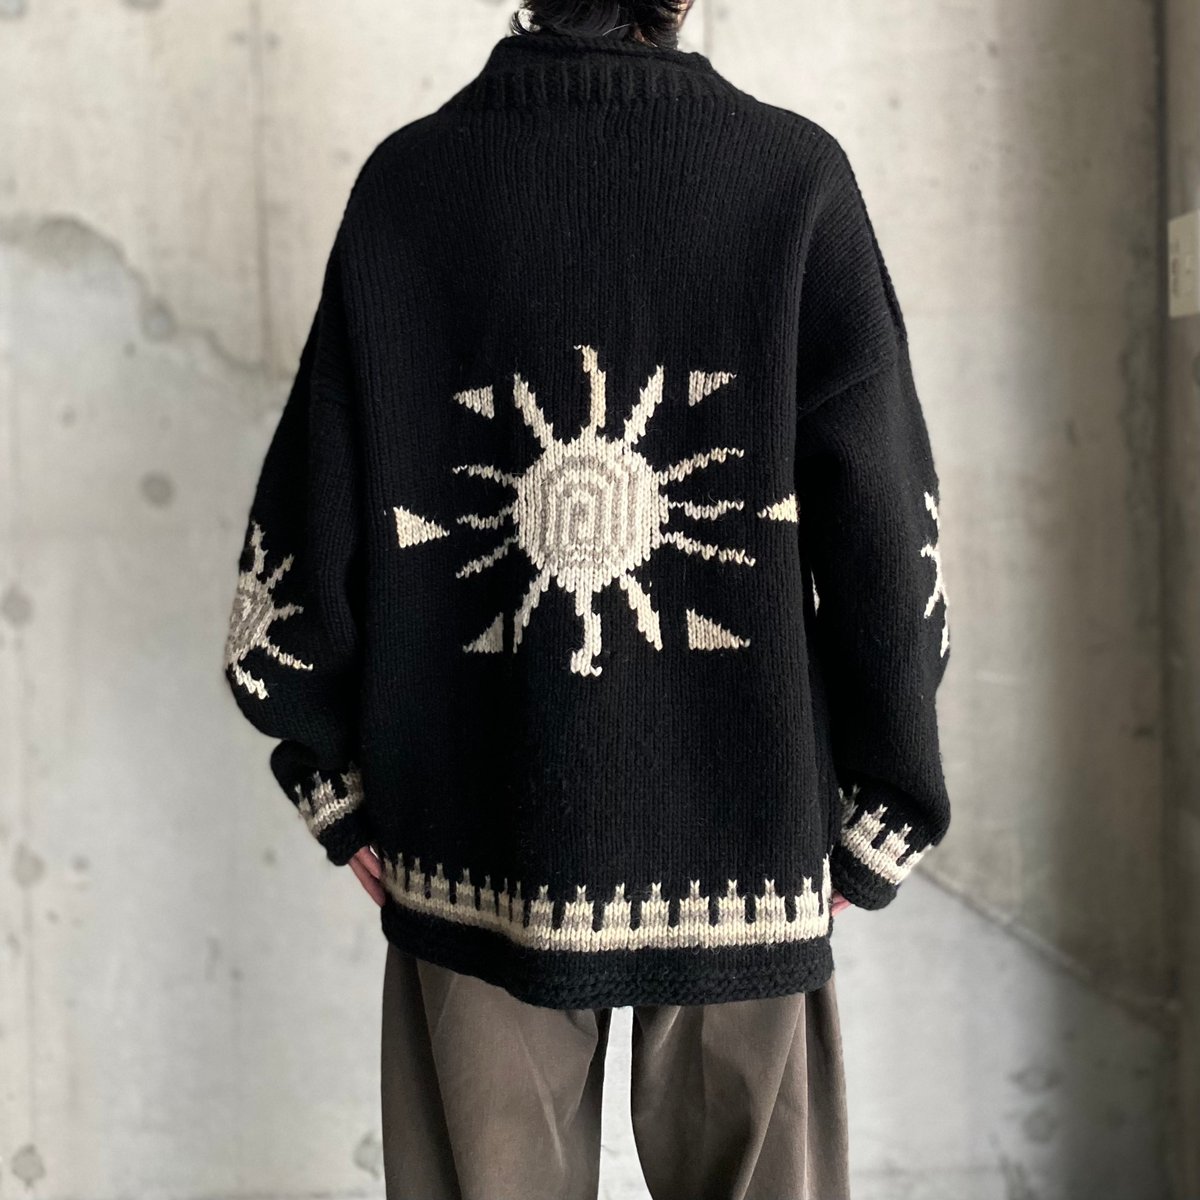 IMBAYA Ecuador Knit Sweater品番